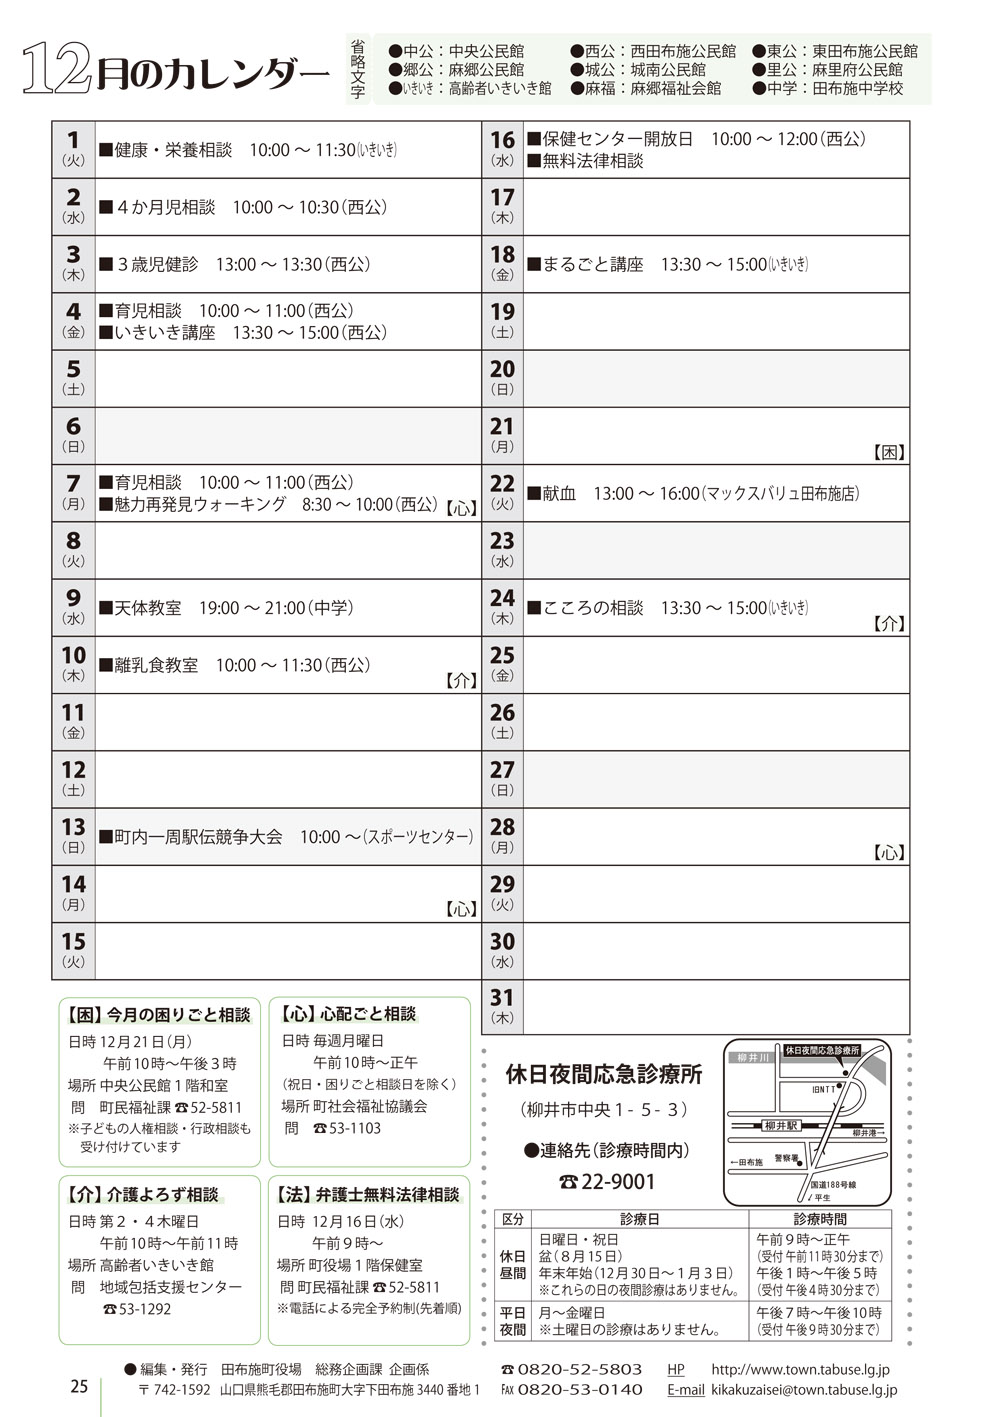 行事カレンダー 2015年12月 田布施町